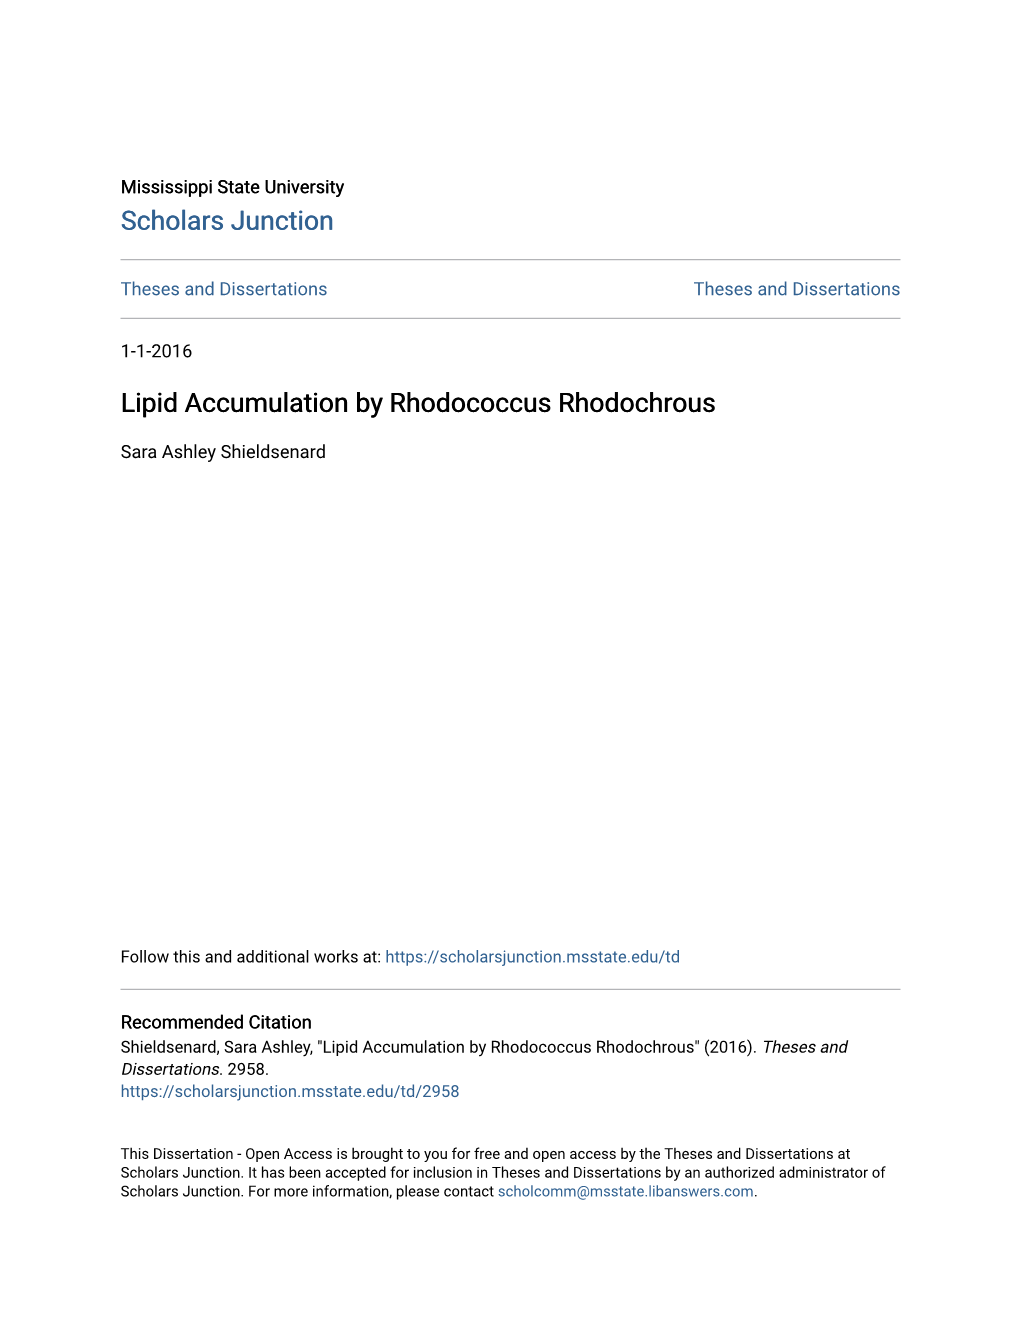 Lipid Accumulation by Rhodococcus Rhodochrous